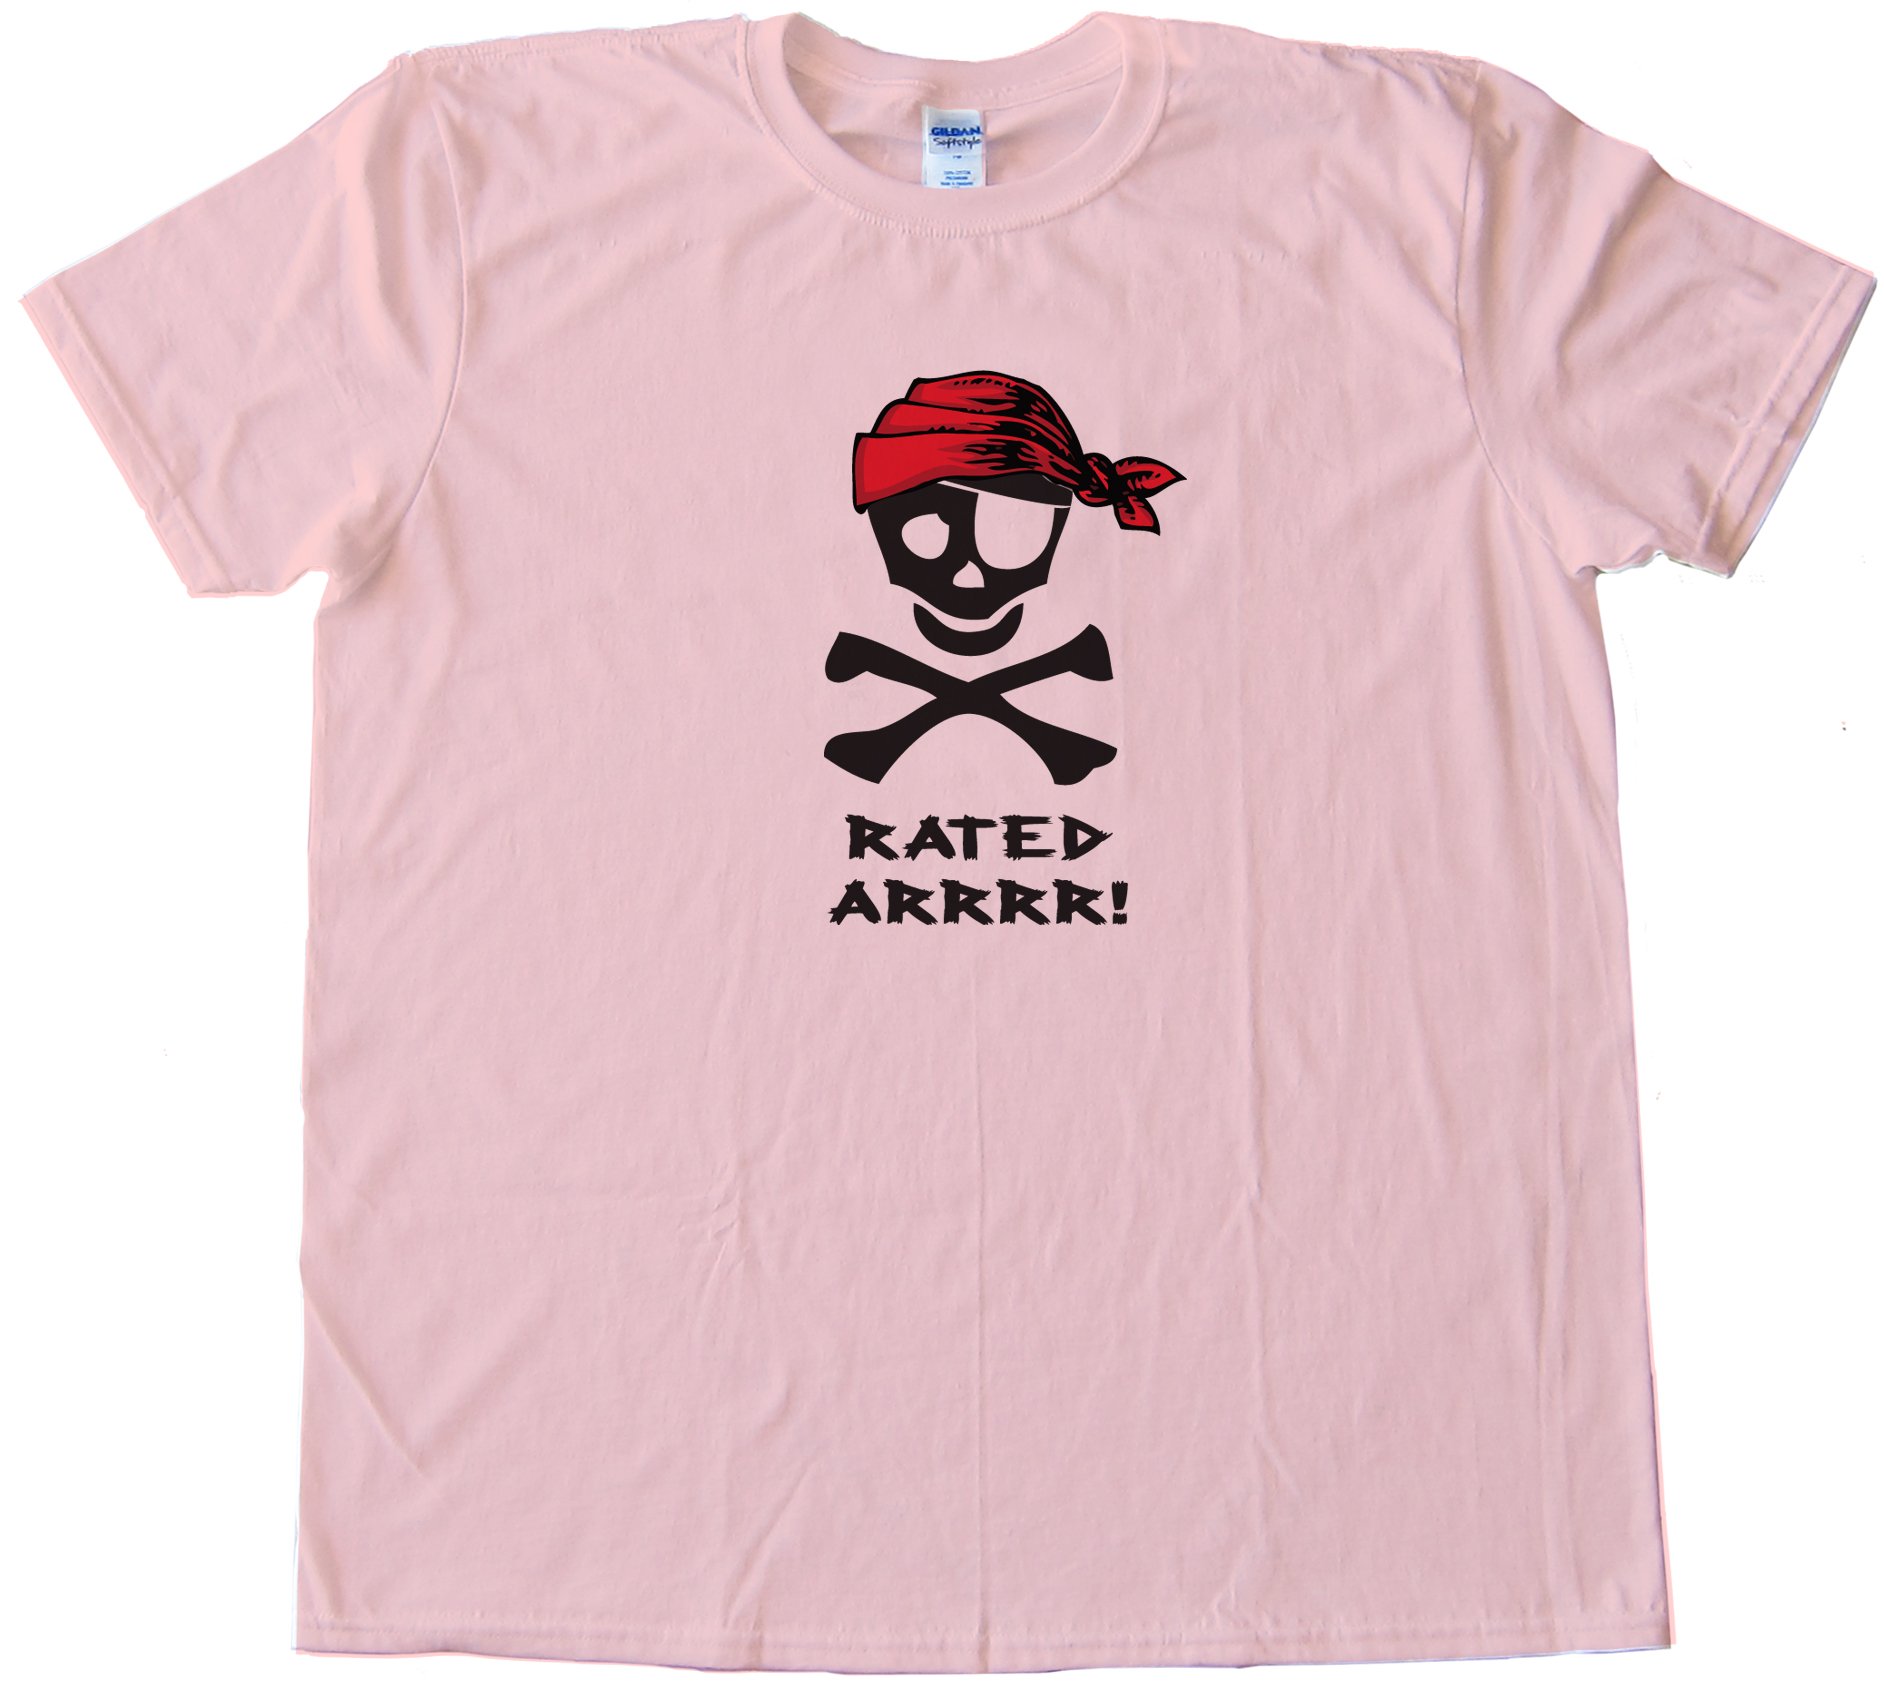 Rated Arrrr! Pirate Tee Shirt